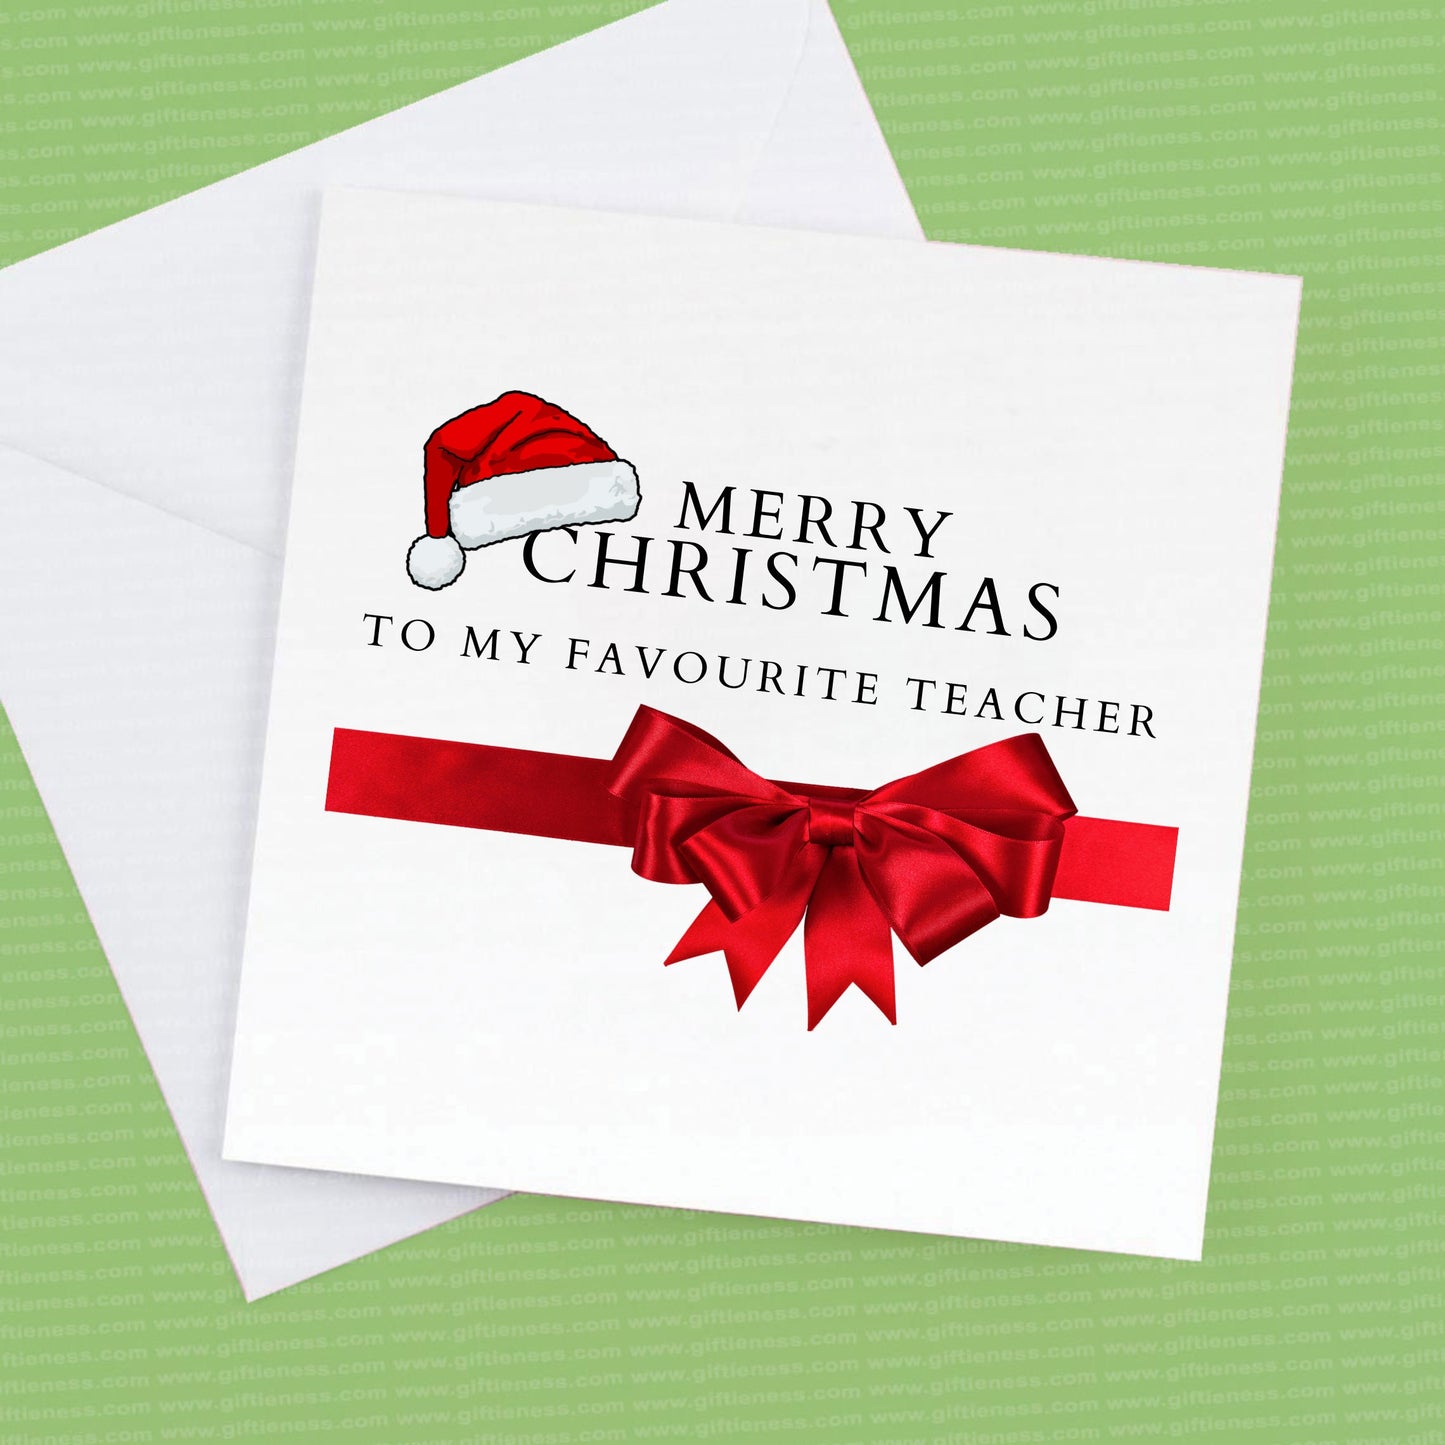 Merry Christmas to my favourite teacher, Teacher Christmas card